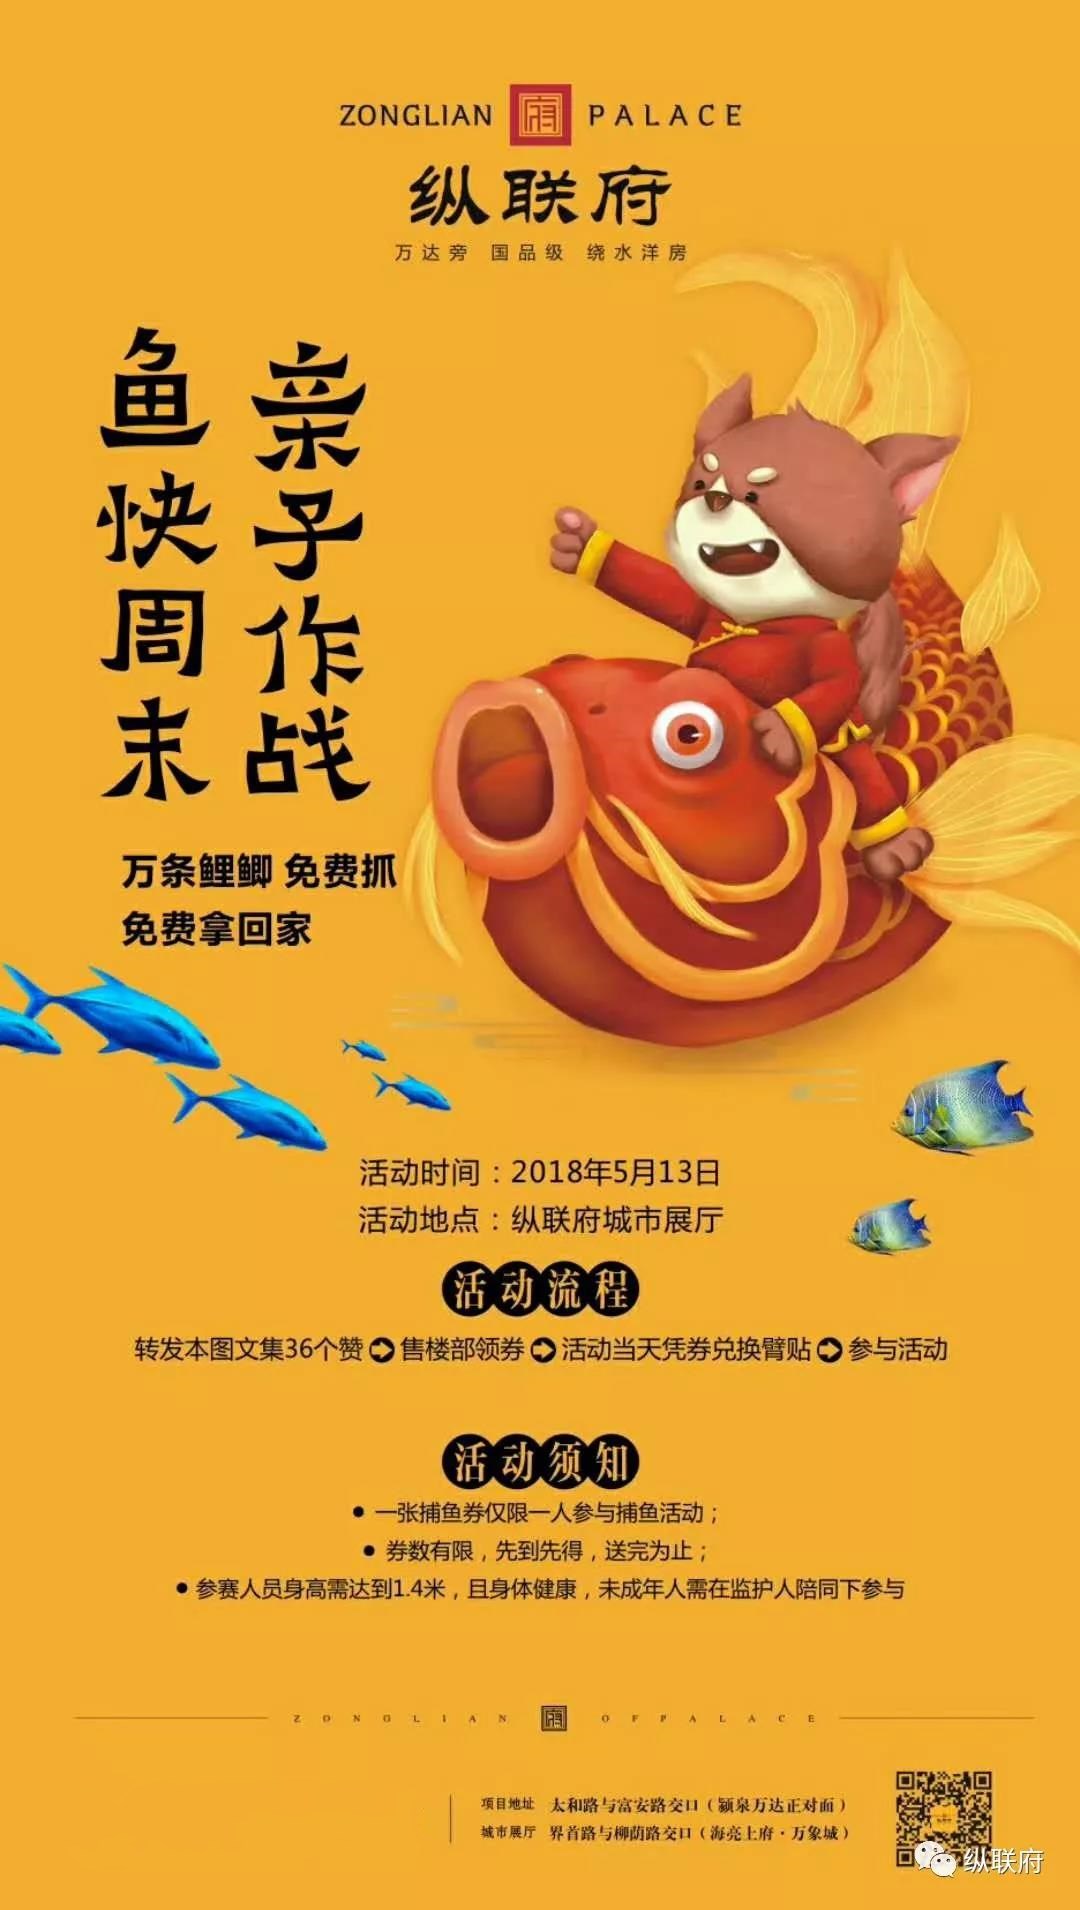 5月13日纵联府“鱼”你一起追忆童年时光-中国网地产